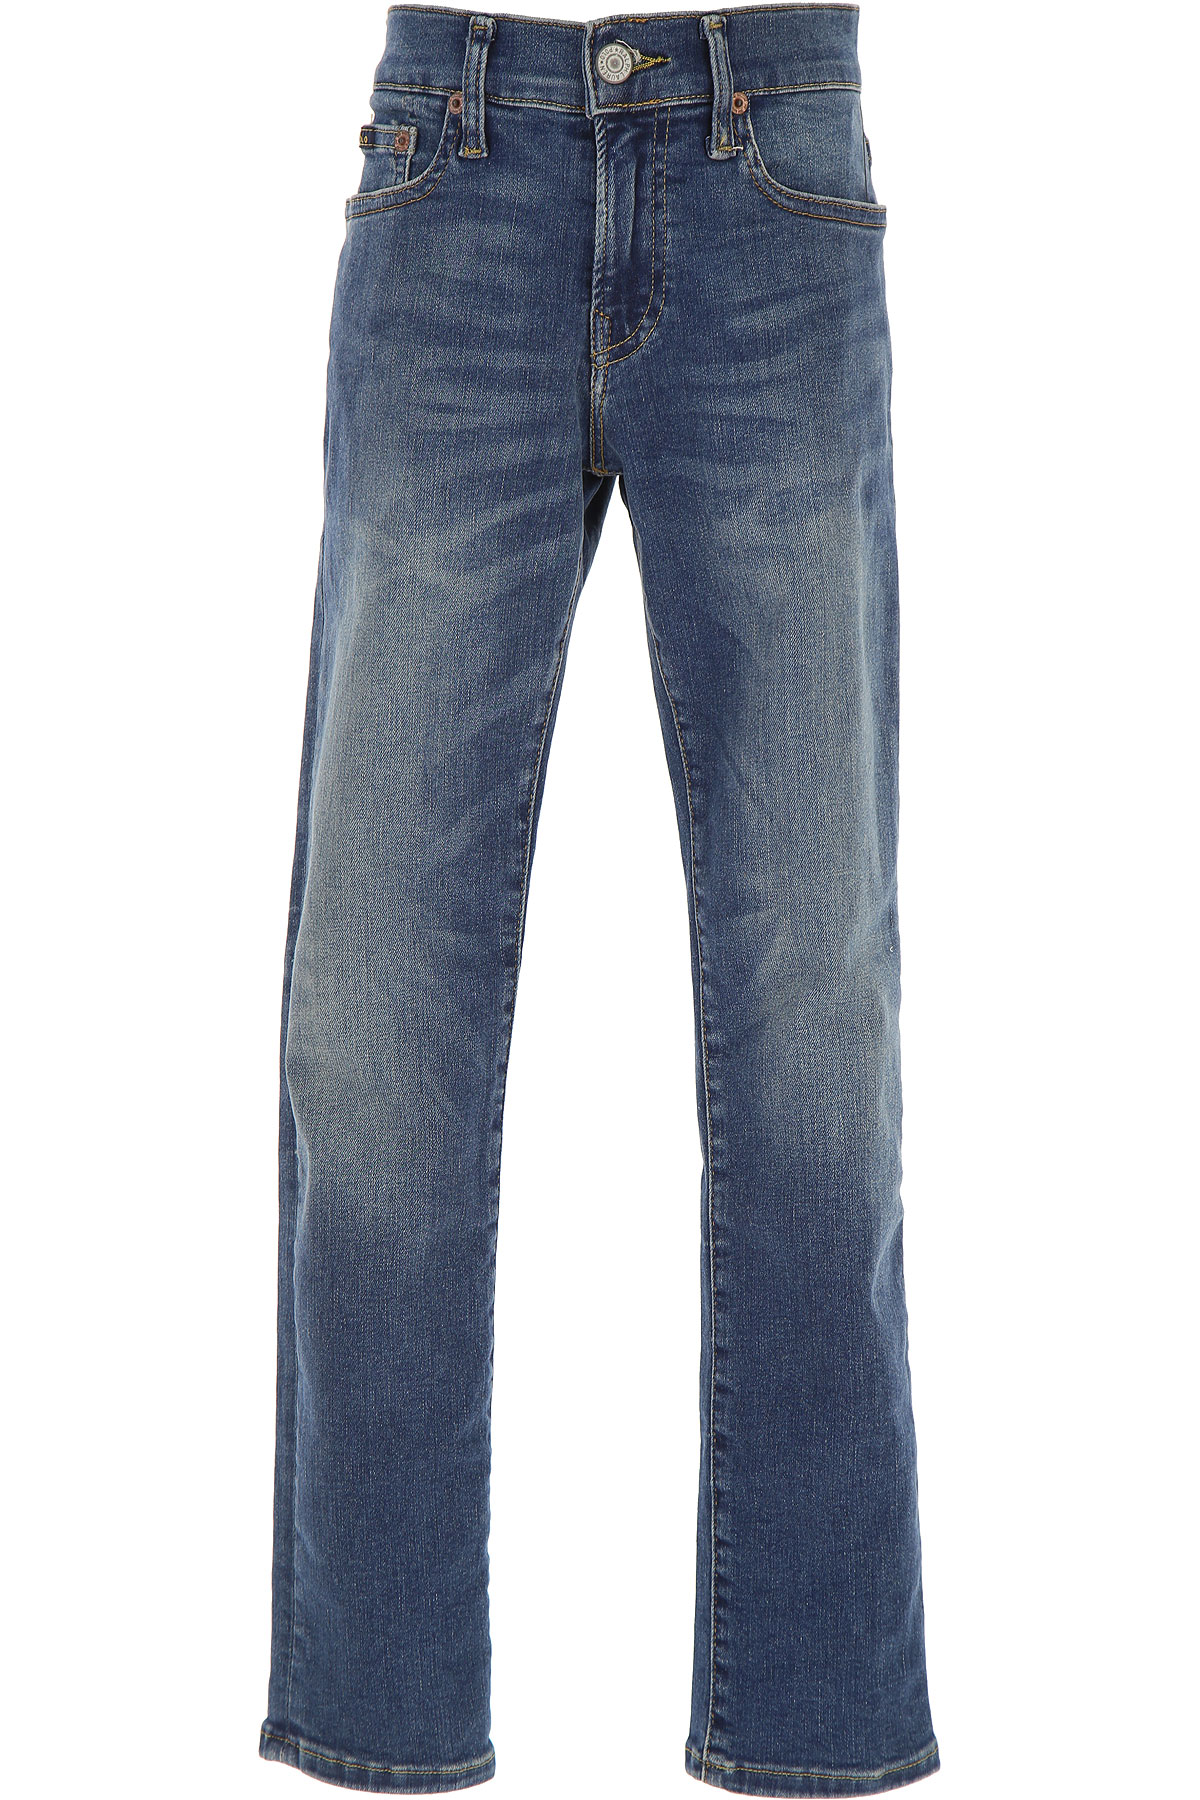 Ralph Lauren Kinder Jeans für Jungen Günstig im Sale, Denim- Blau, Baumwolle, 2017, 10Y 8Y